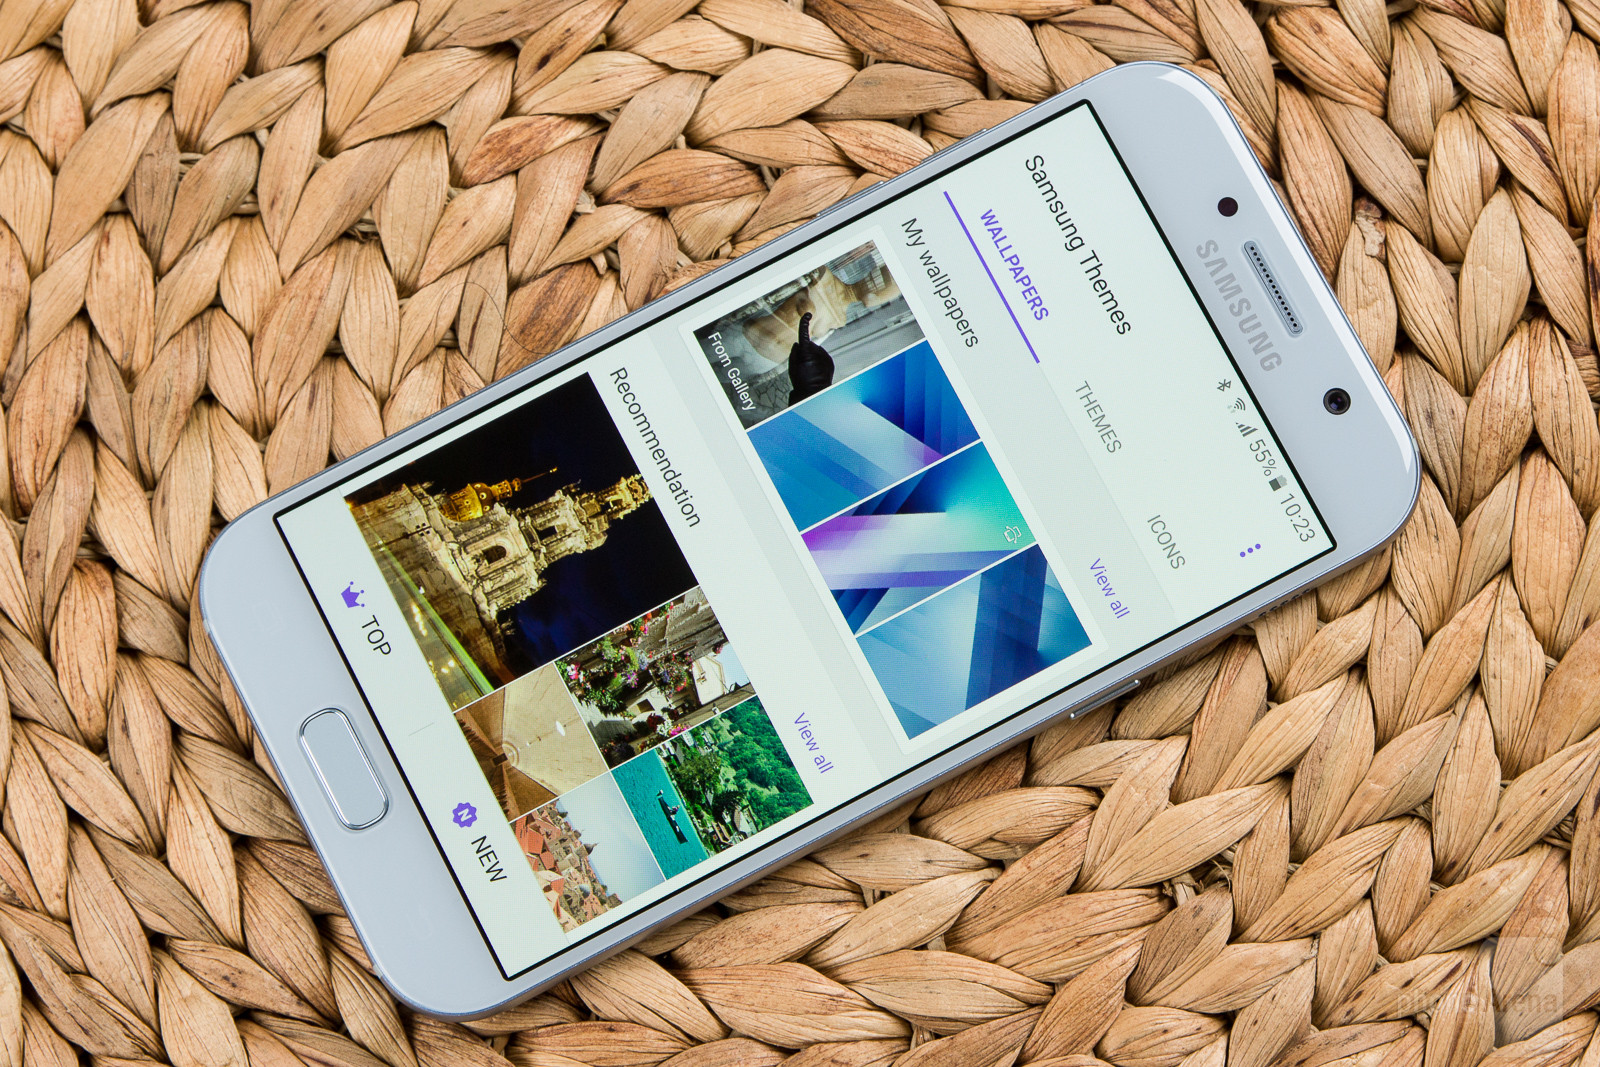 Samsung Galaxy A5 Review - Samsung A5 2017 White Colour - HD Wallpaper 